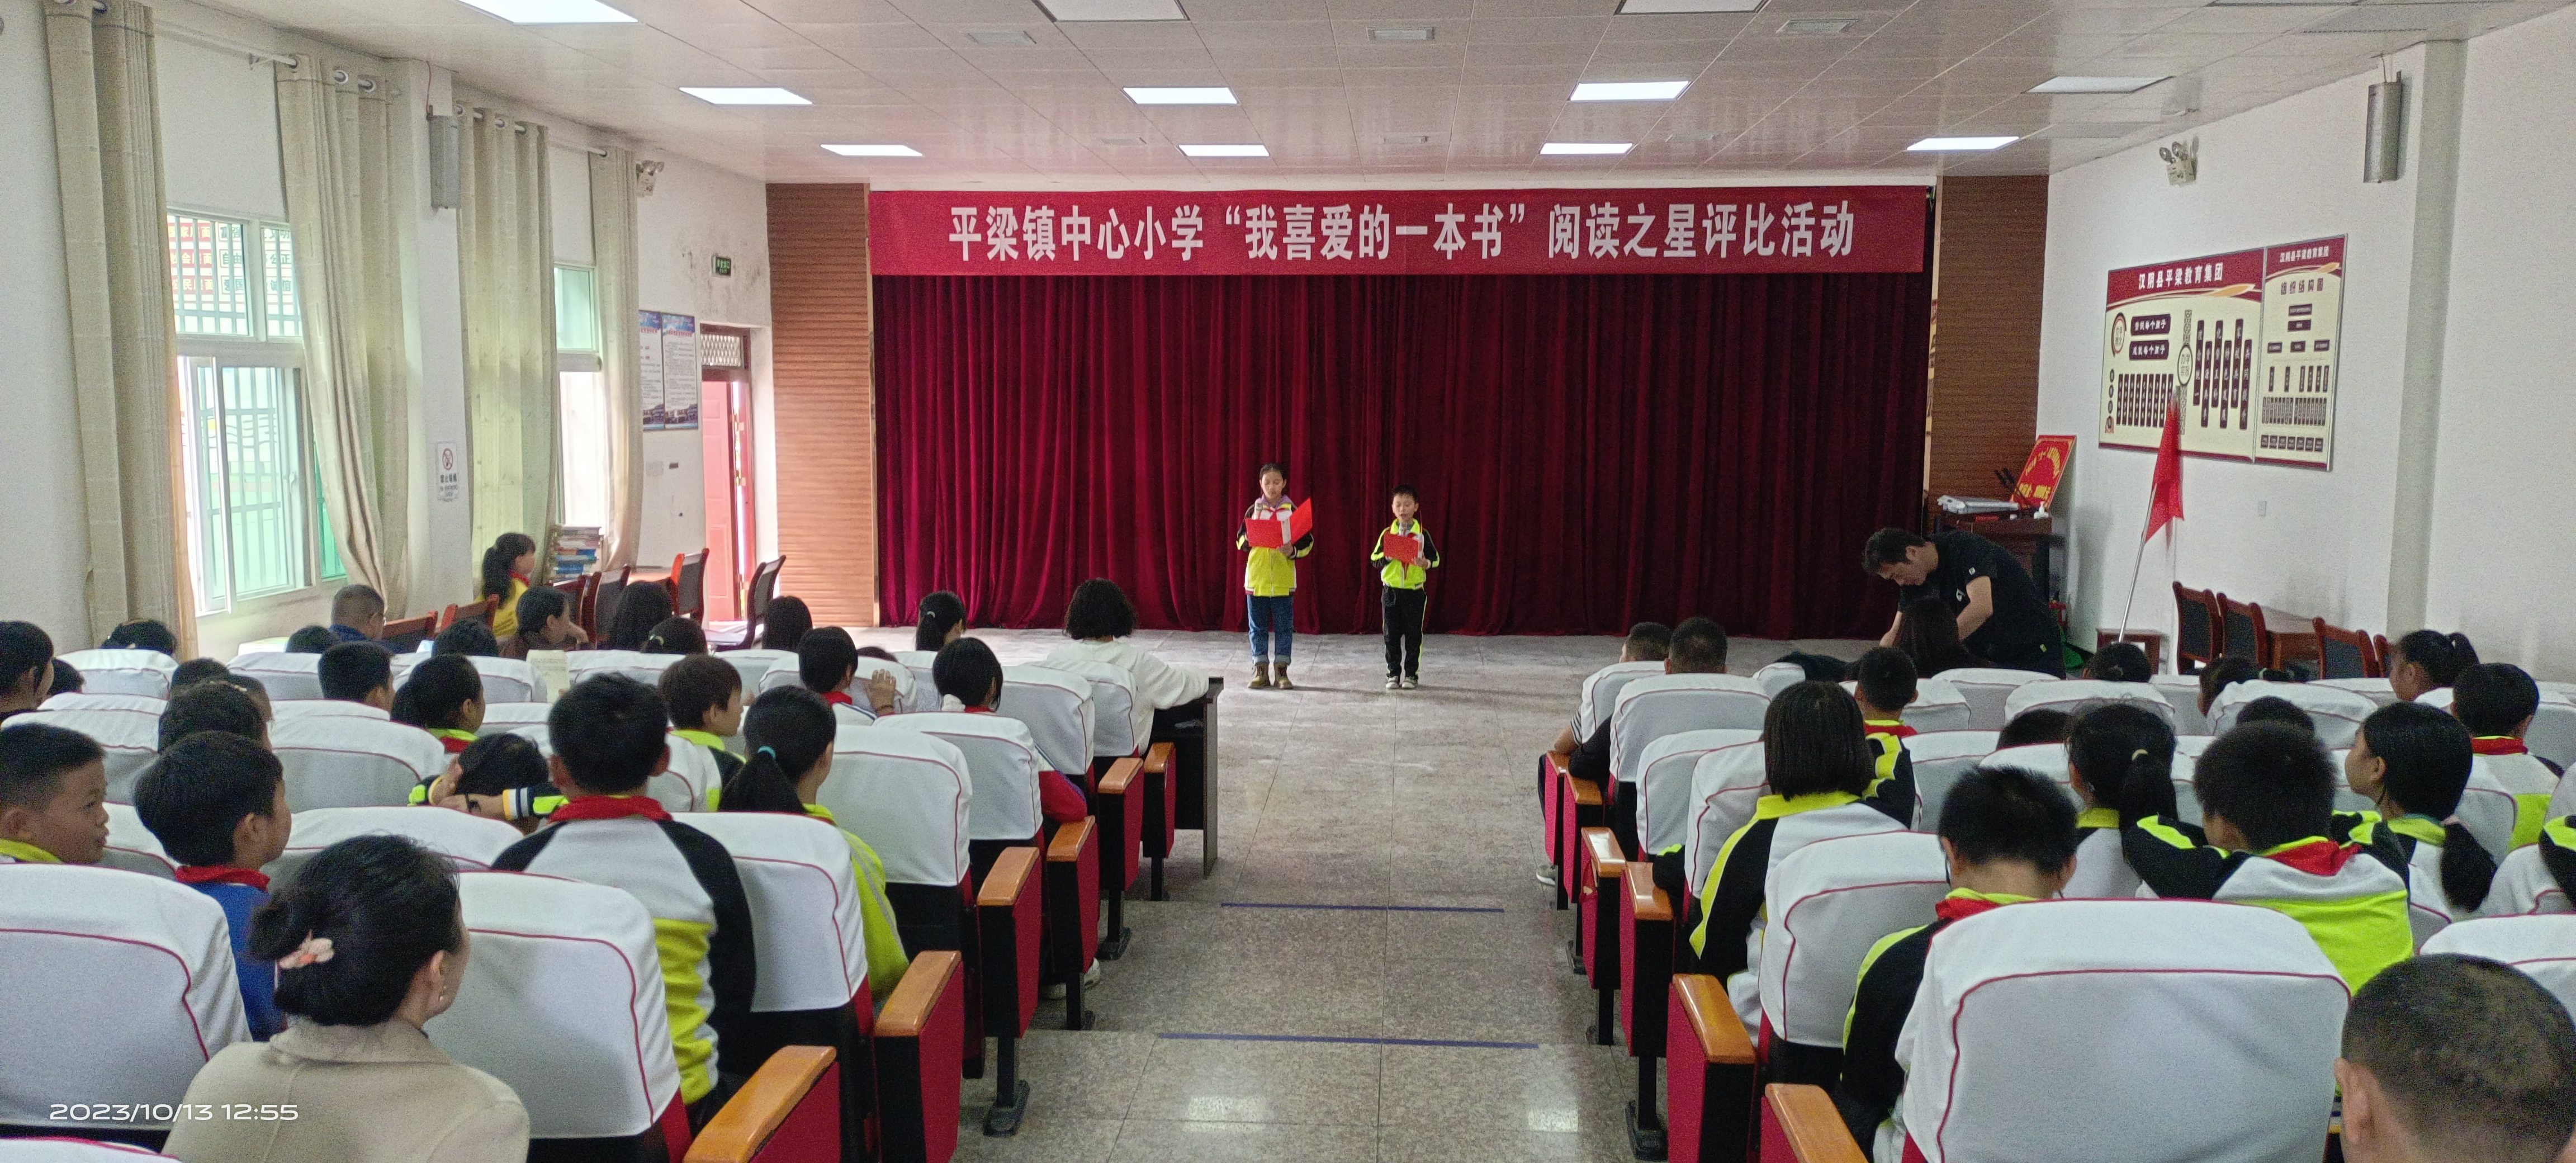 汉阴县平梁镇中心小学 举行“我的一本课外书”阅读之星评比活动